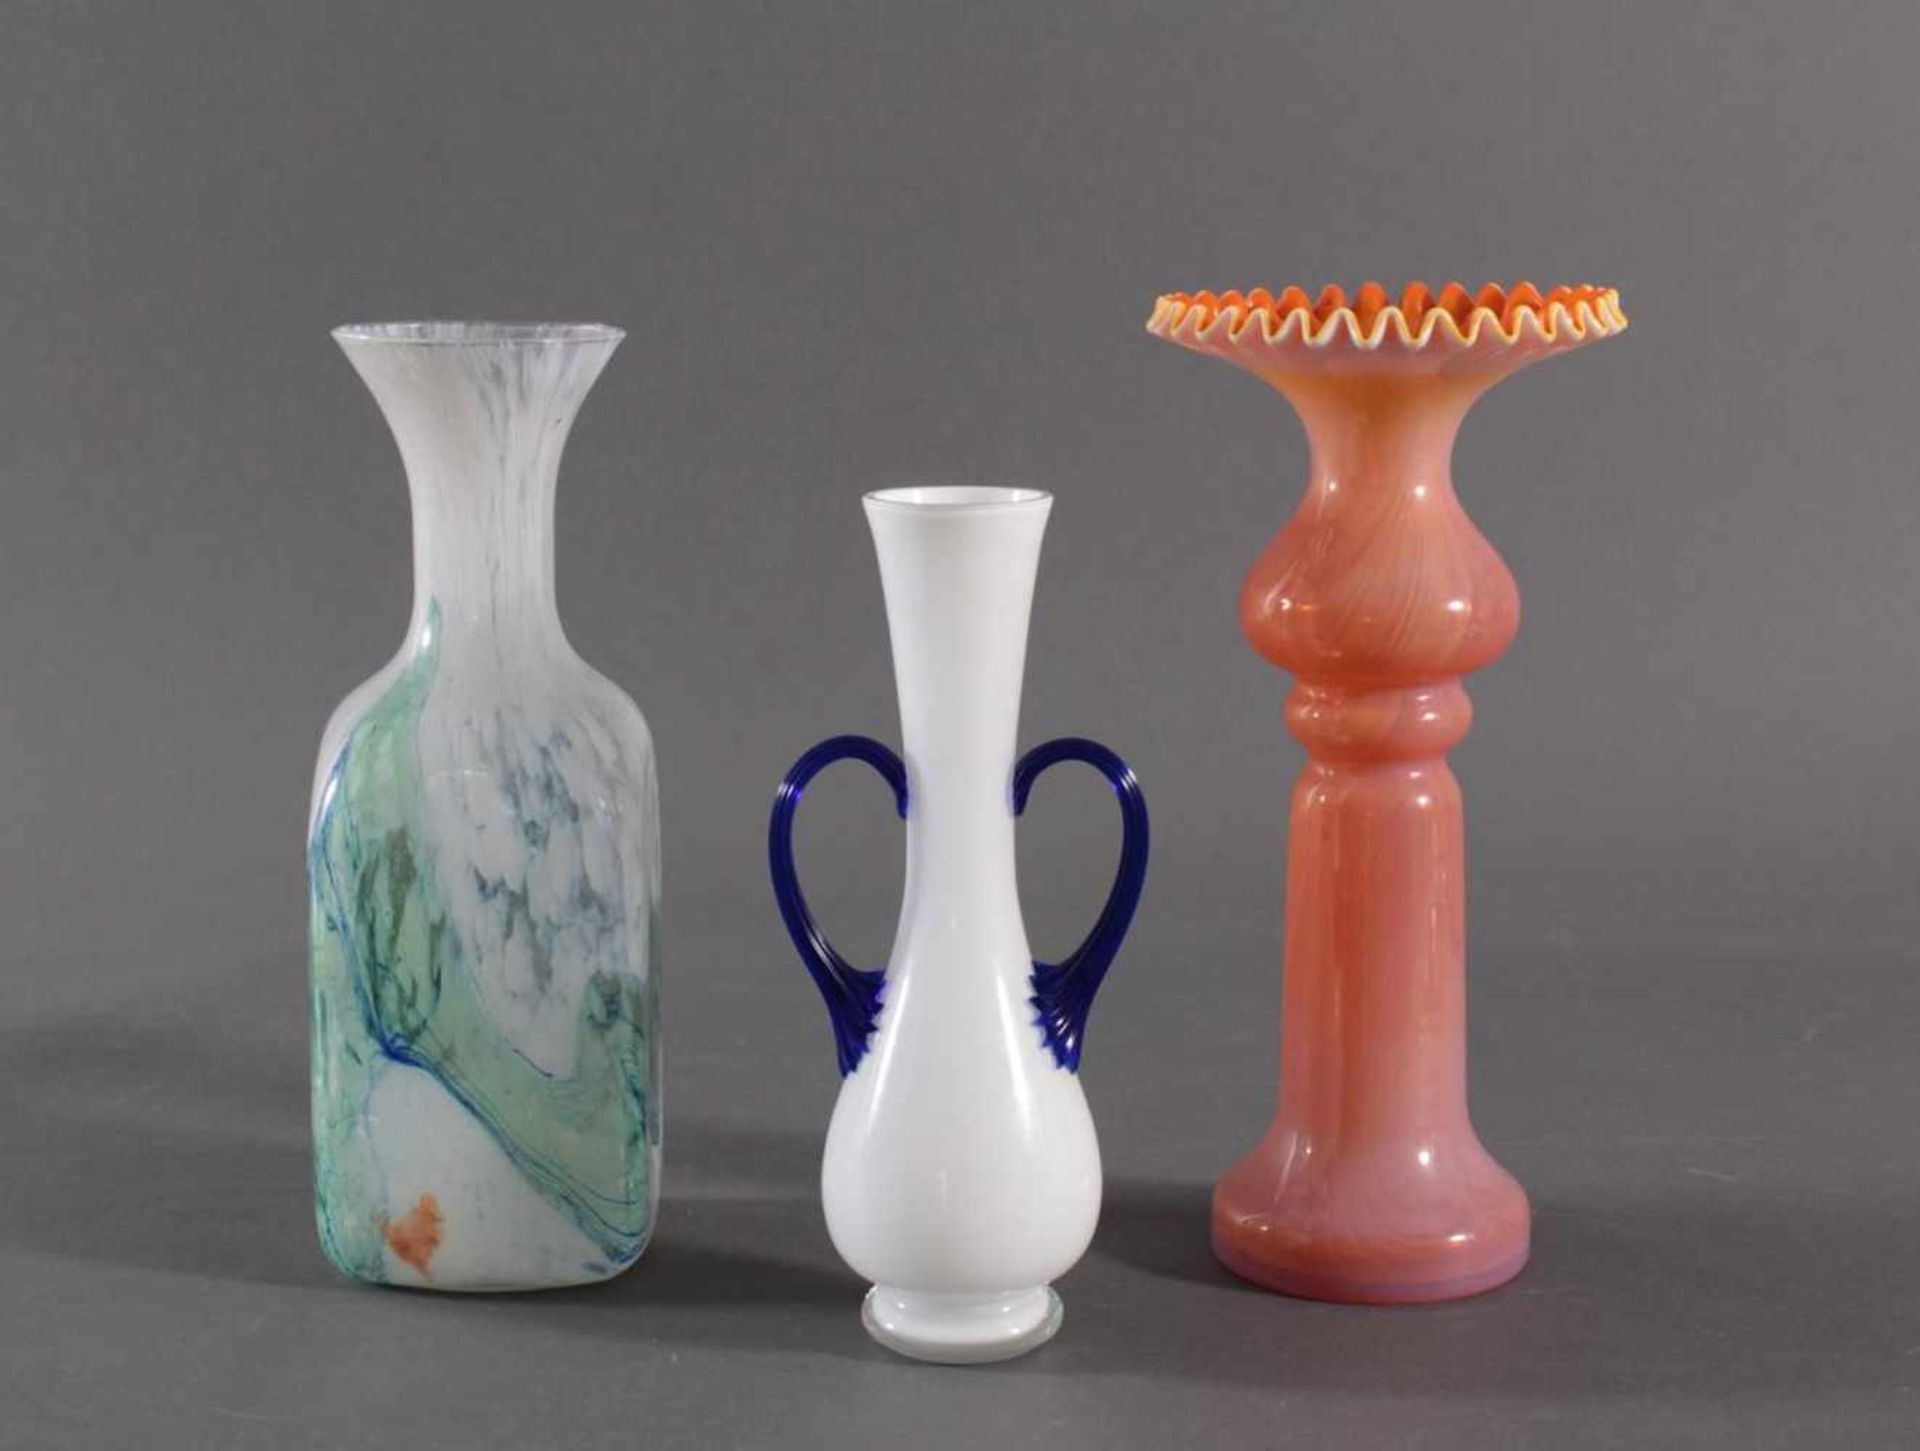 Drei Formglas-Vasen, OpalglasWeißes und orangefarbenes Opalglas. Formgeblasen, geweitete, vielfach